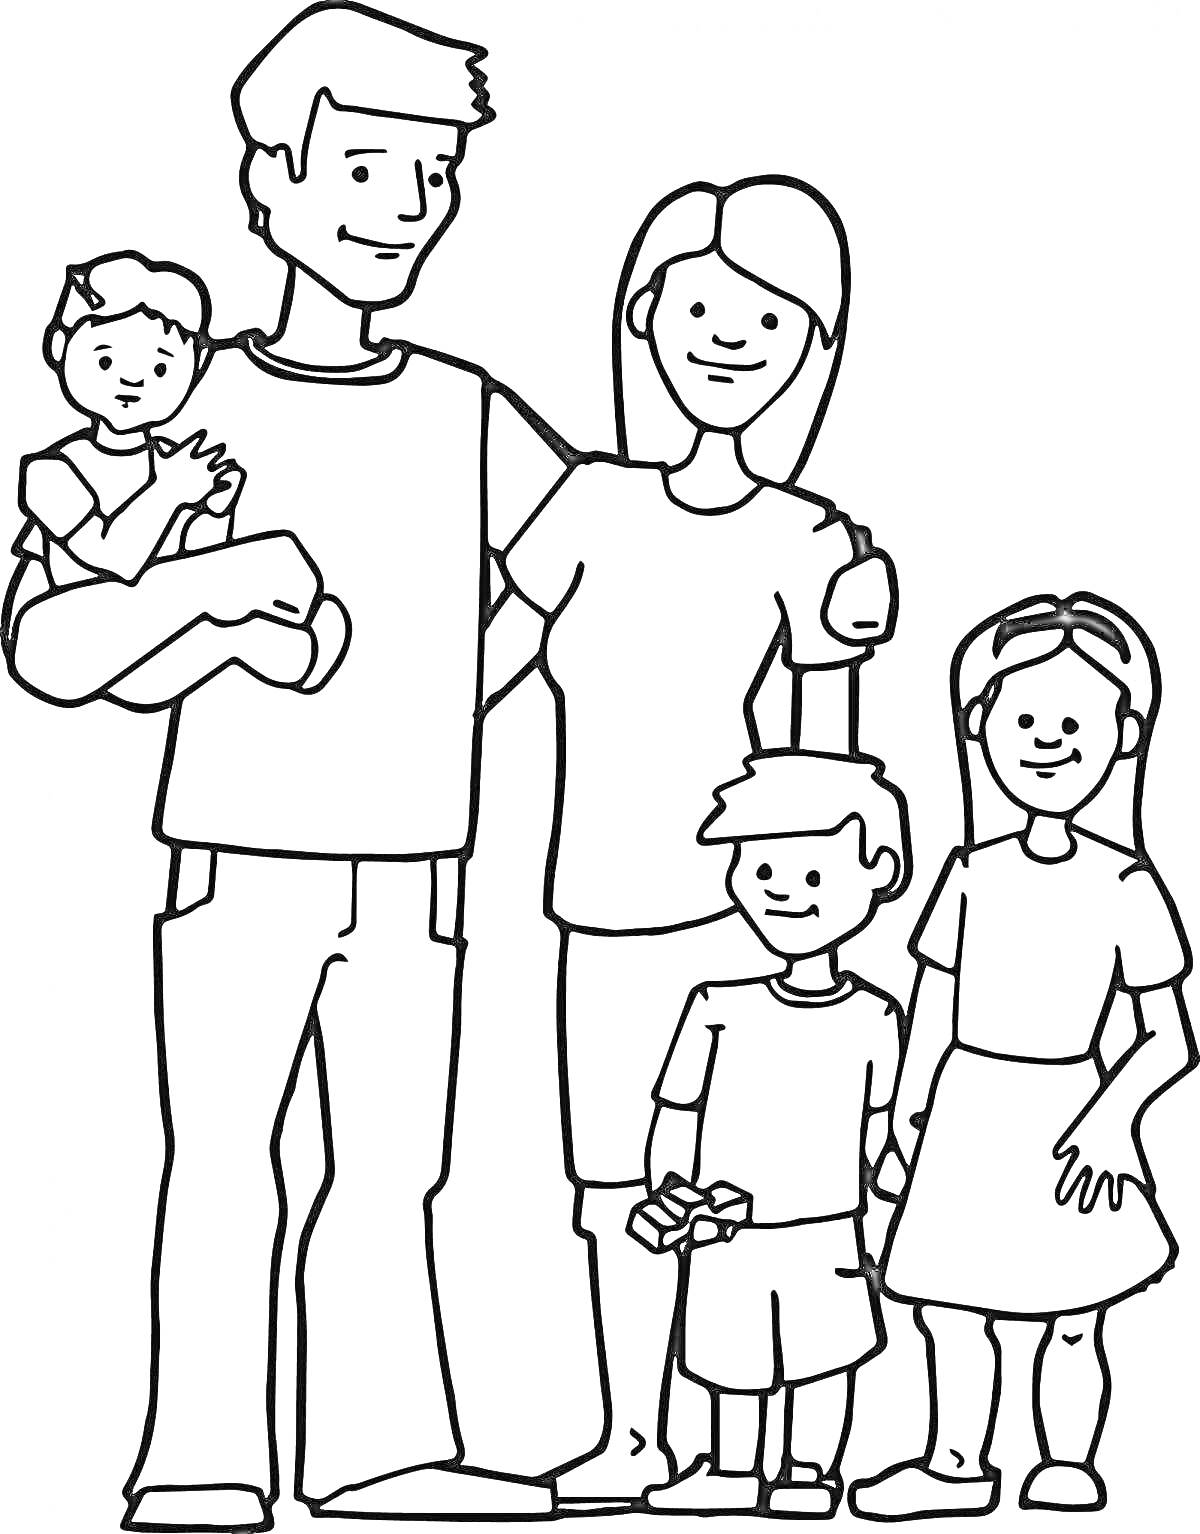 РаскраскаСемья из пяти человек: отец, мать, сын и две дочери